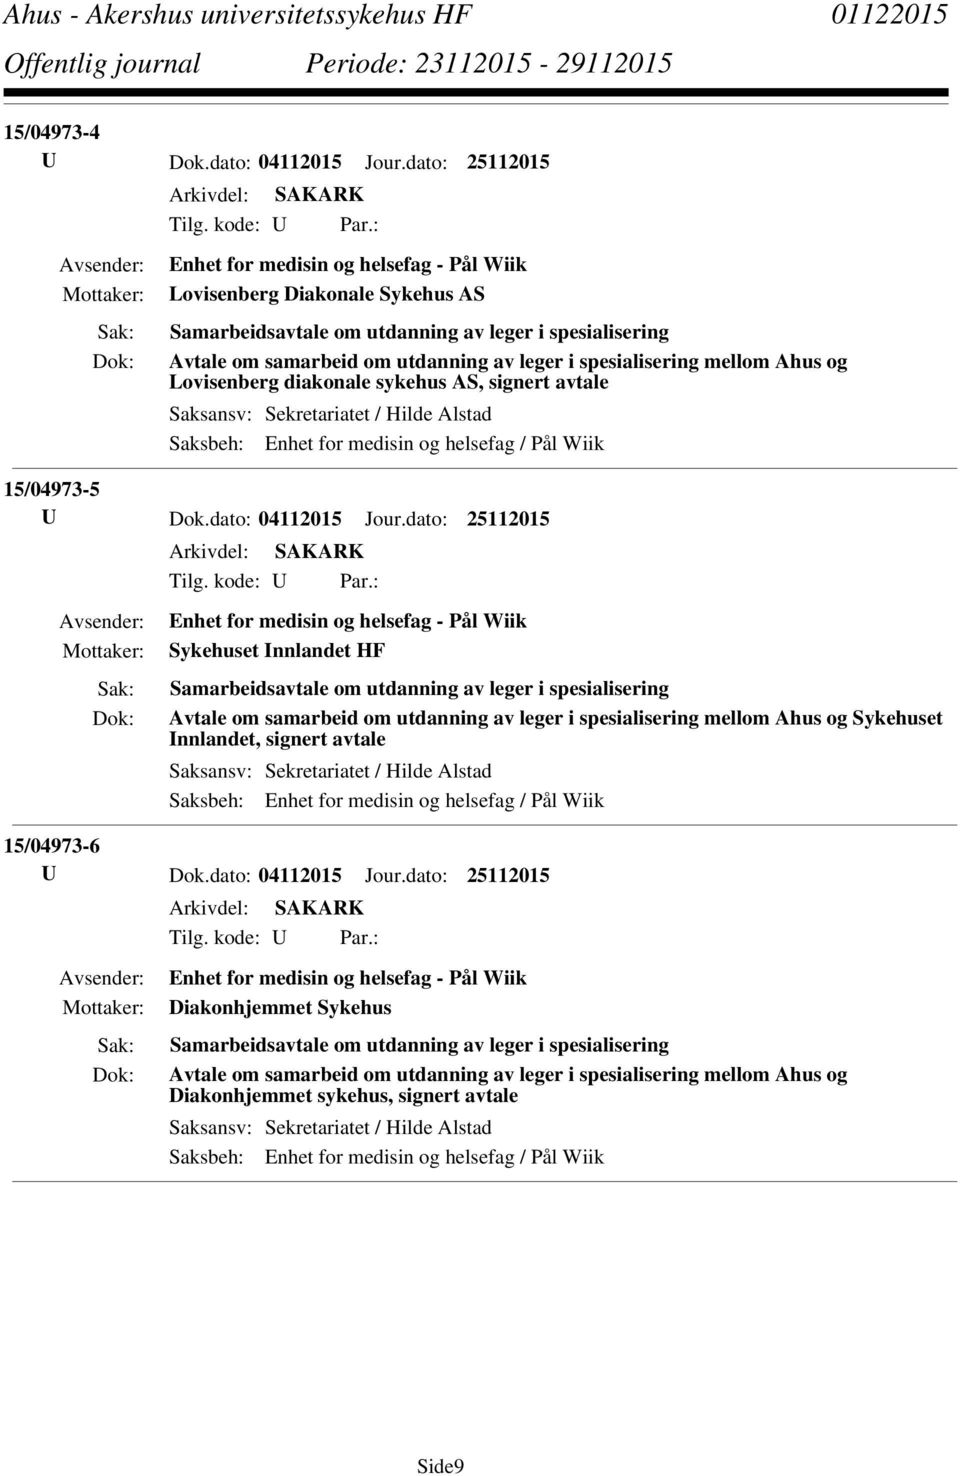 utdanning av leger i spesialisering mellom Ahus og Sykehuset Innlandet, signert avtale 15/04973-6 Diakonhjemmet